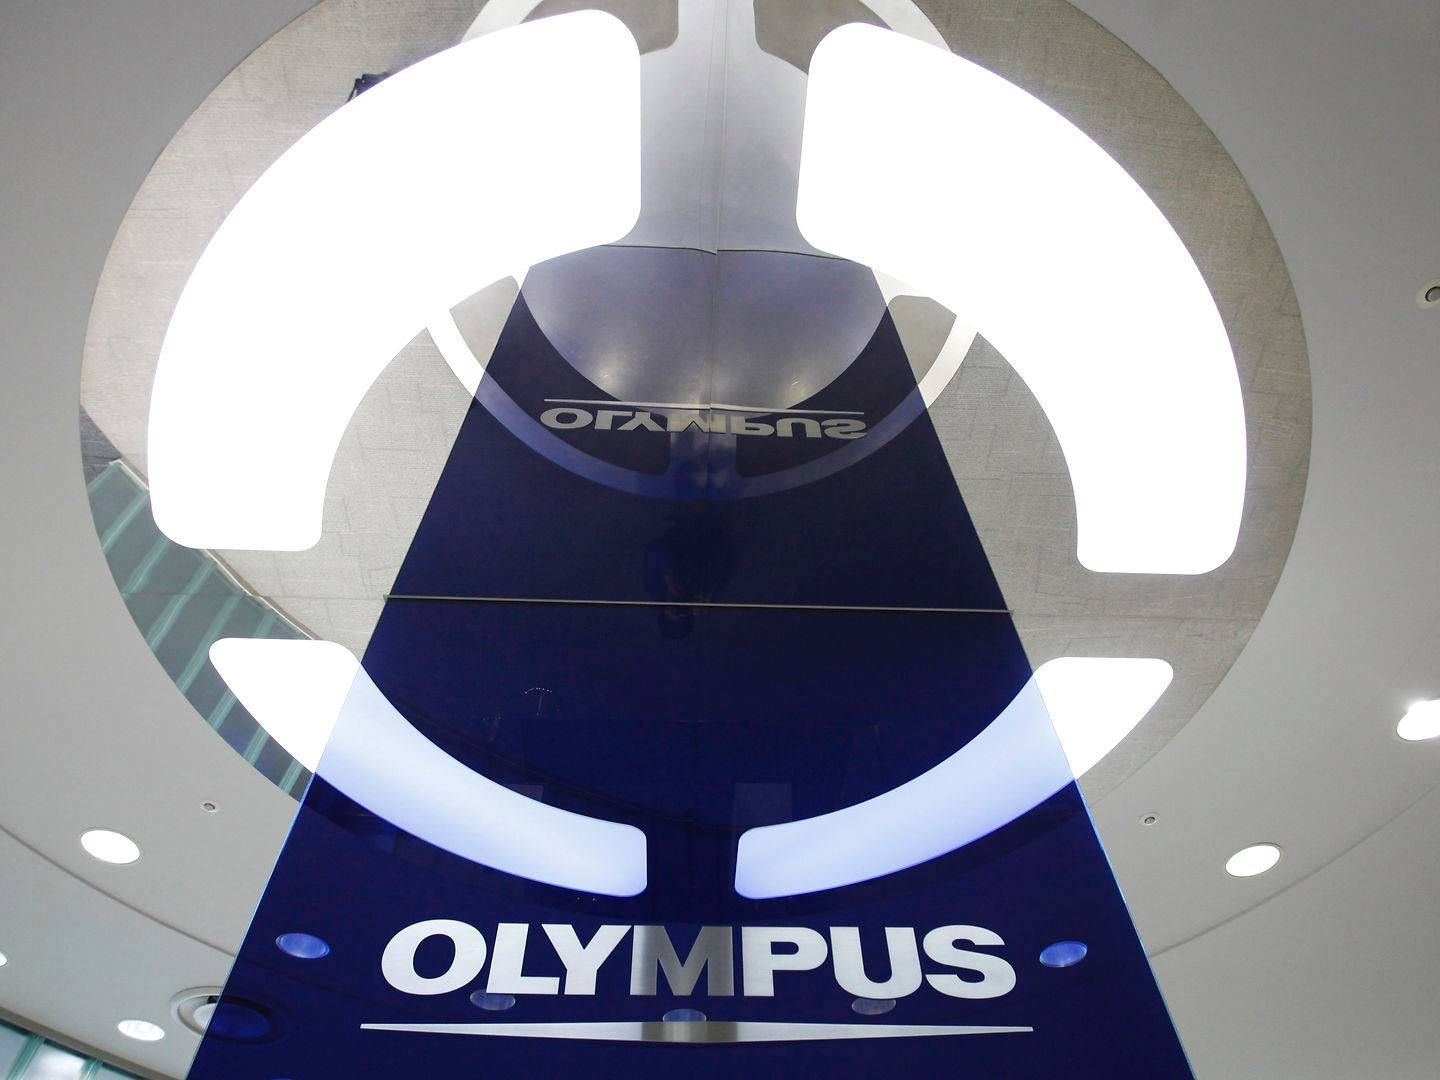 Japanske Olympus konkurrerer med Ambu om markedet for duodenoskopi – kikkertundersøgelser af tolvfingertarmen (duodenum). | Foto: Yuriko Nakao / Reuters / Ritzau Scanpix